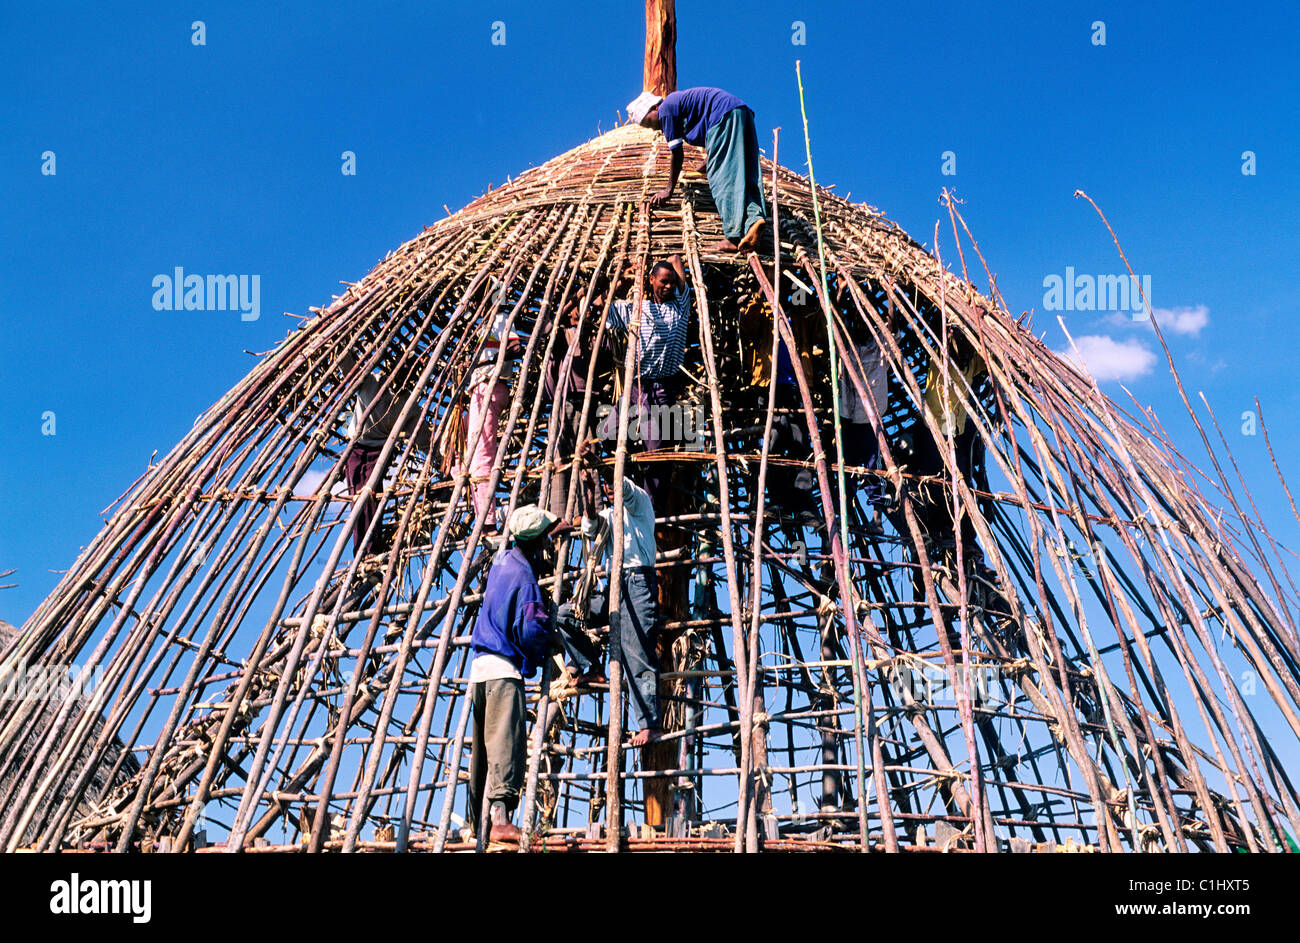 Ethiopie, Provinz Shoa, Gourague Land, bauen eine Hütte Stockfoto